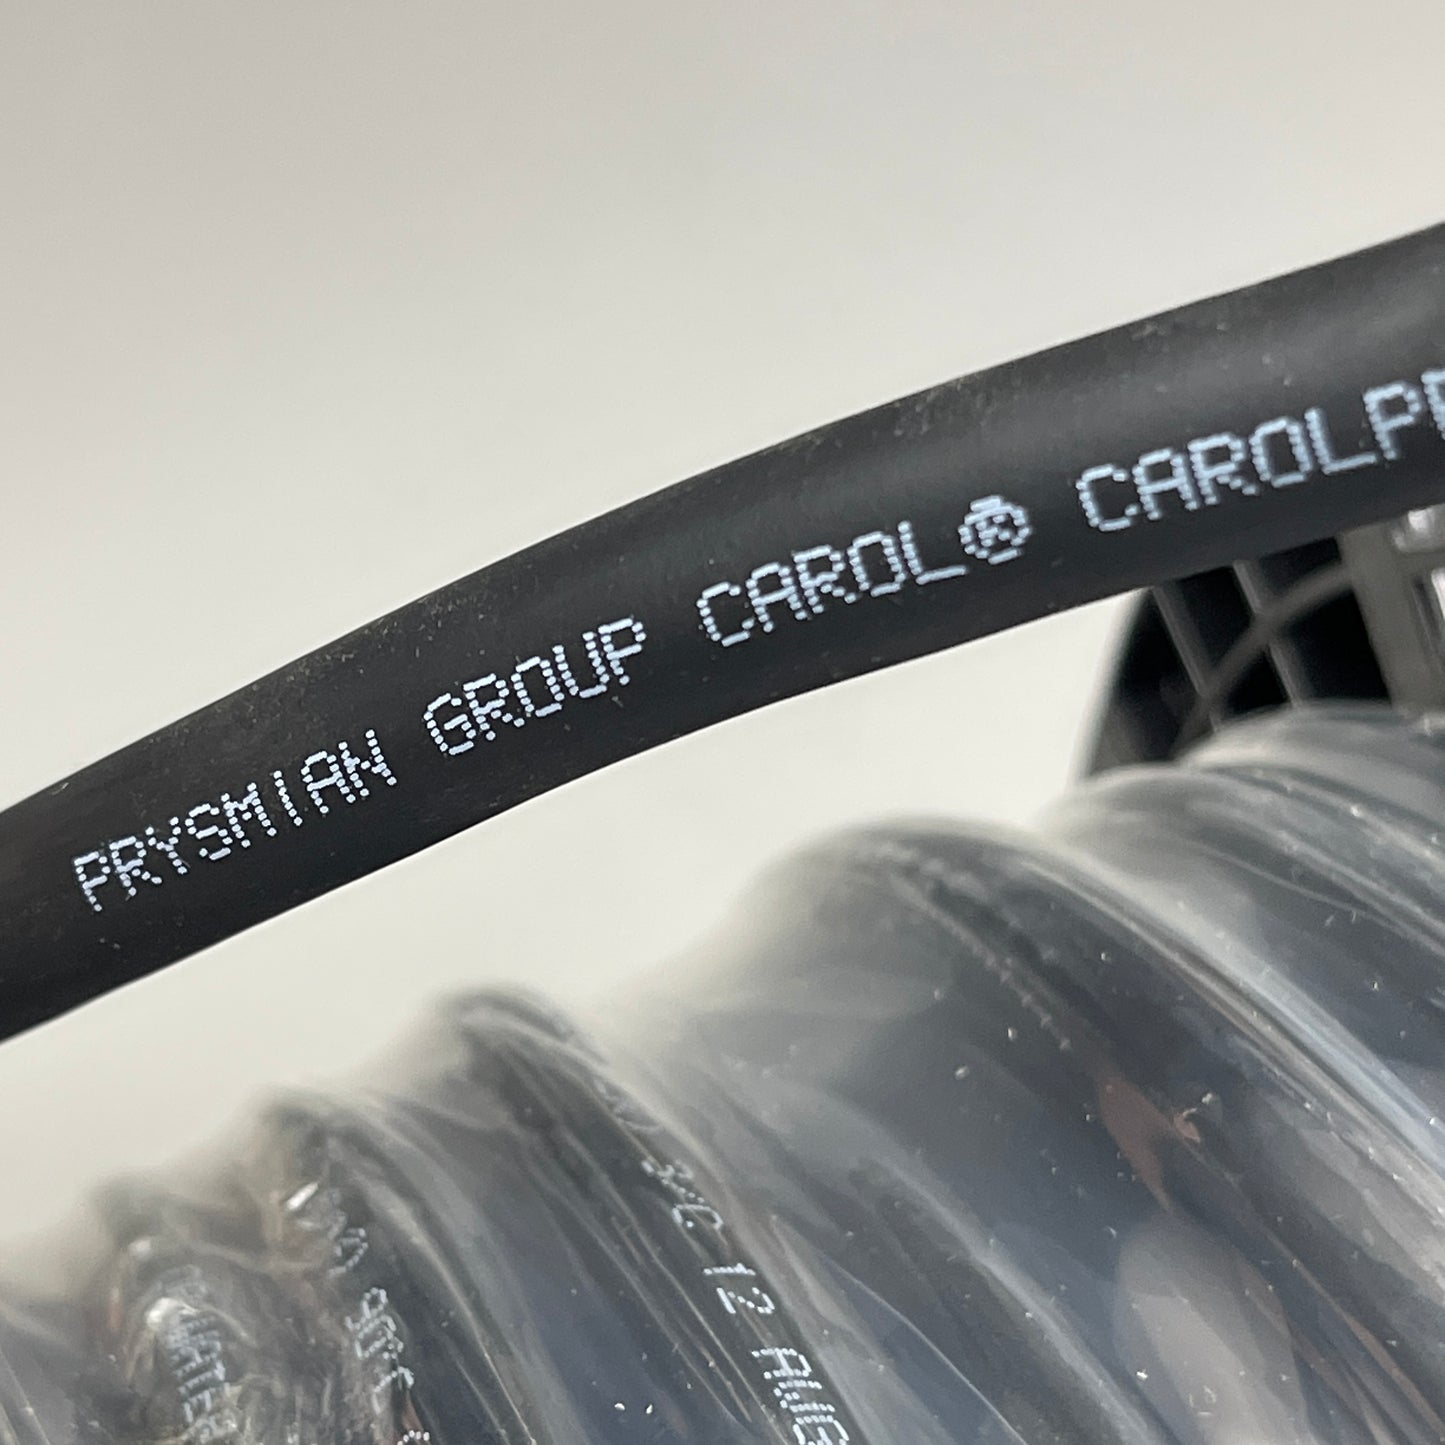 CAROL 12/3 Tru-Mark Wire Carolprene Water Resistant 250' Black Portable Cord 300V SJ00W (New)